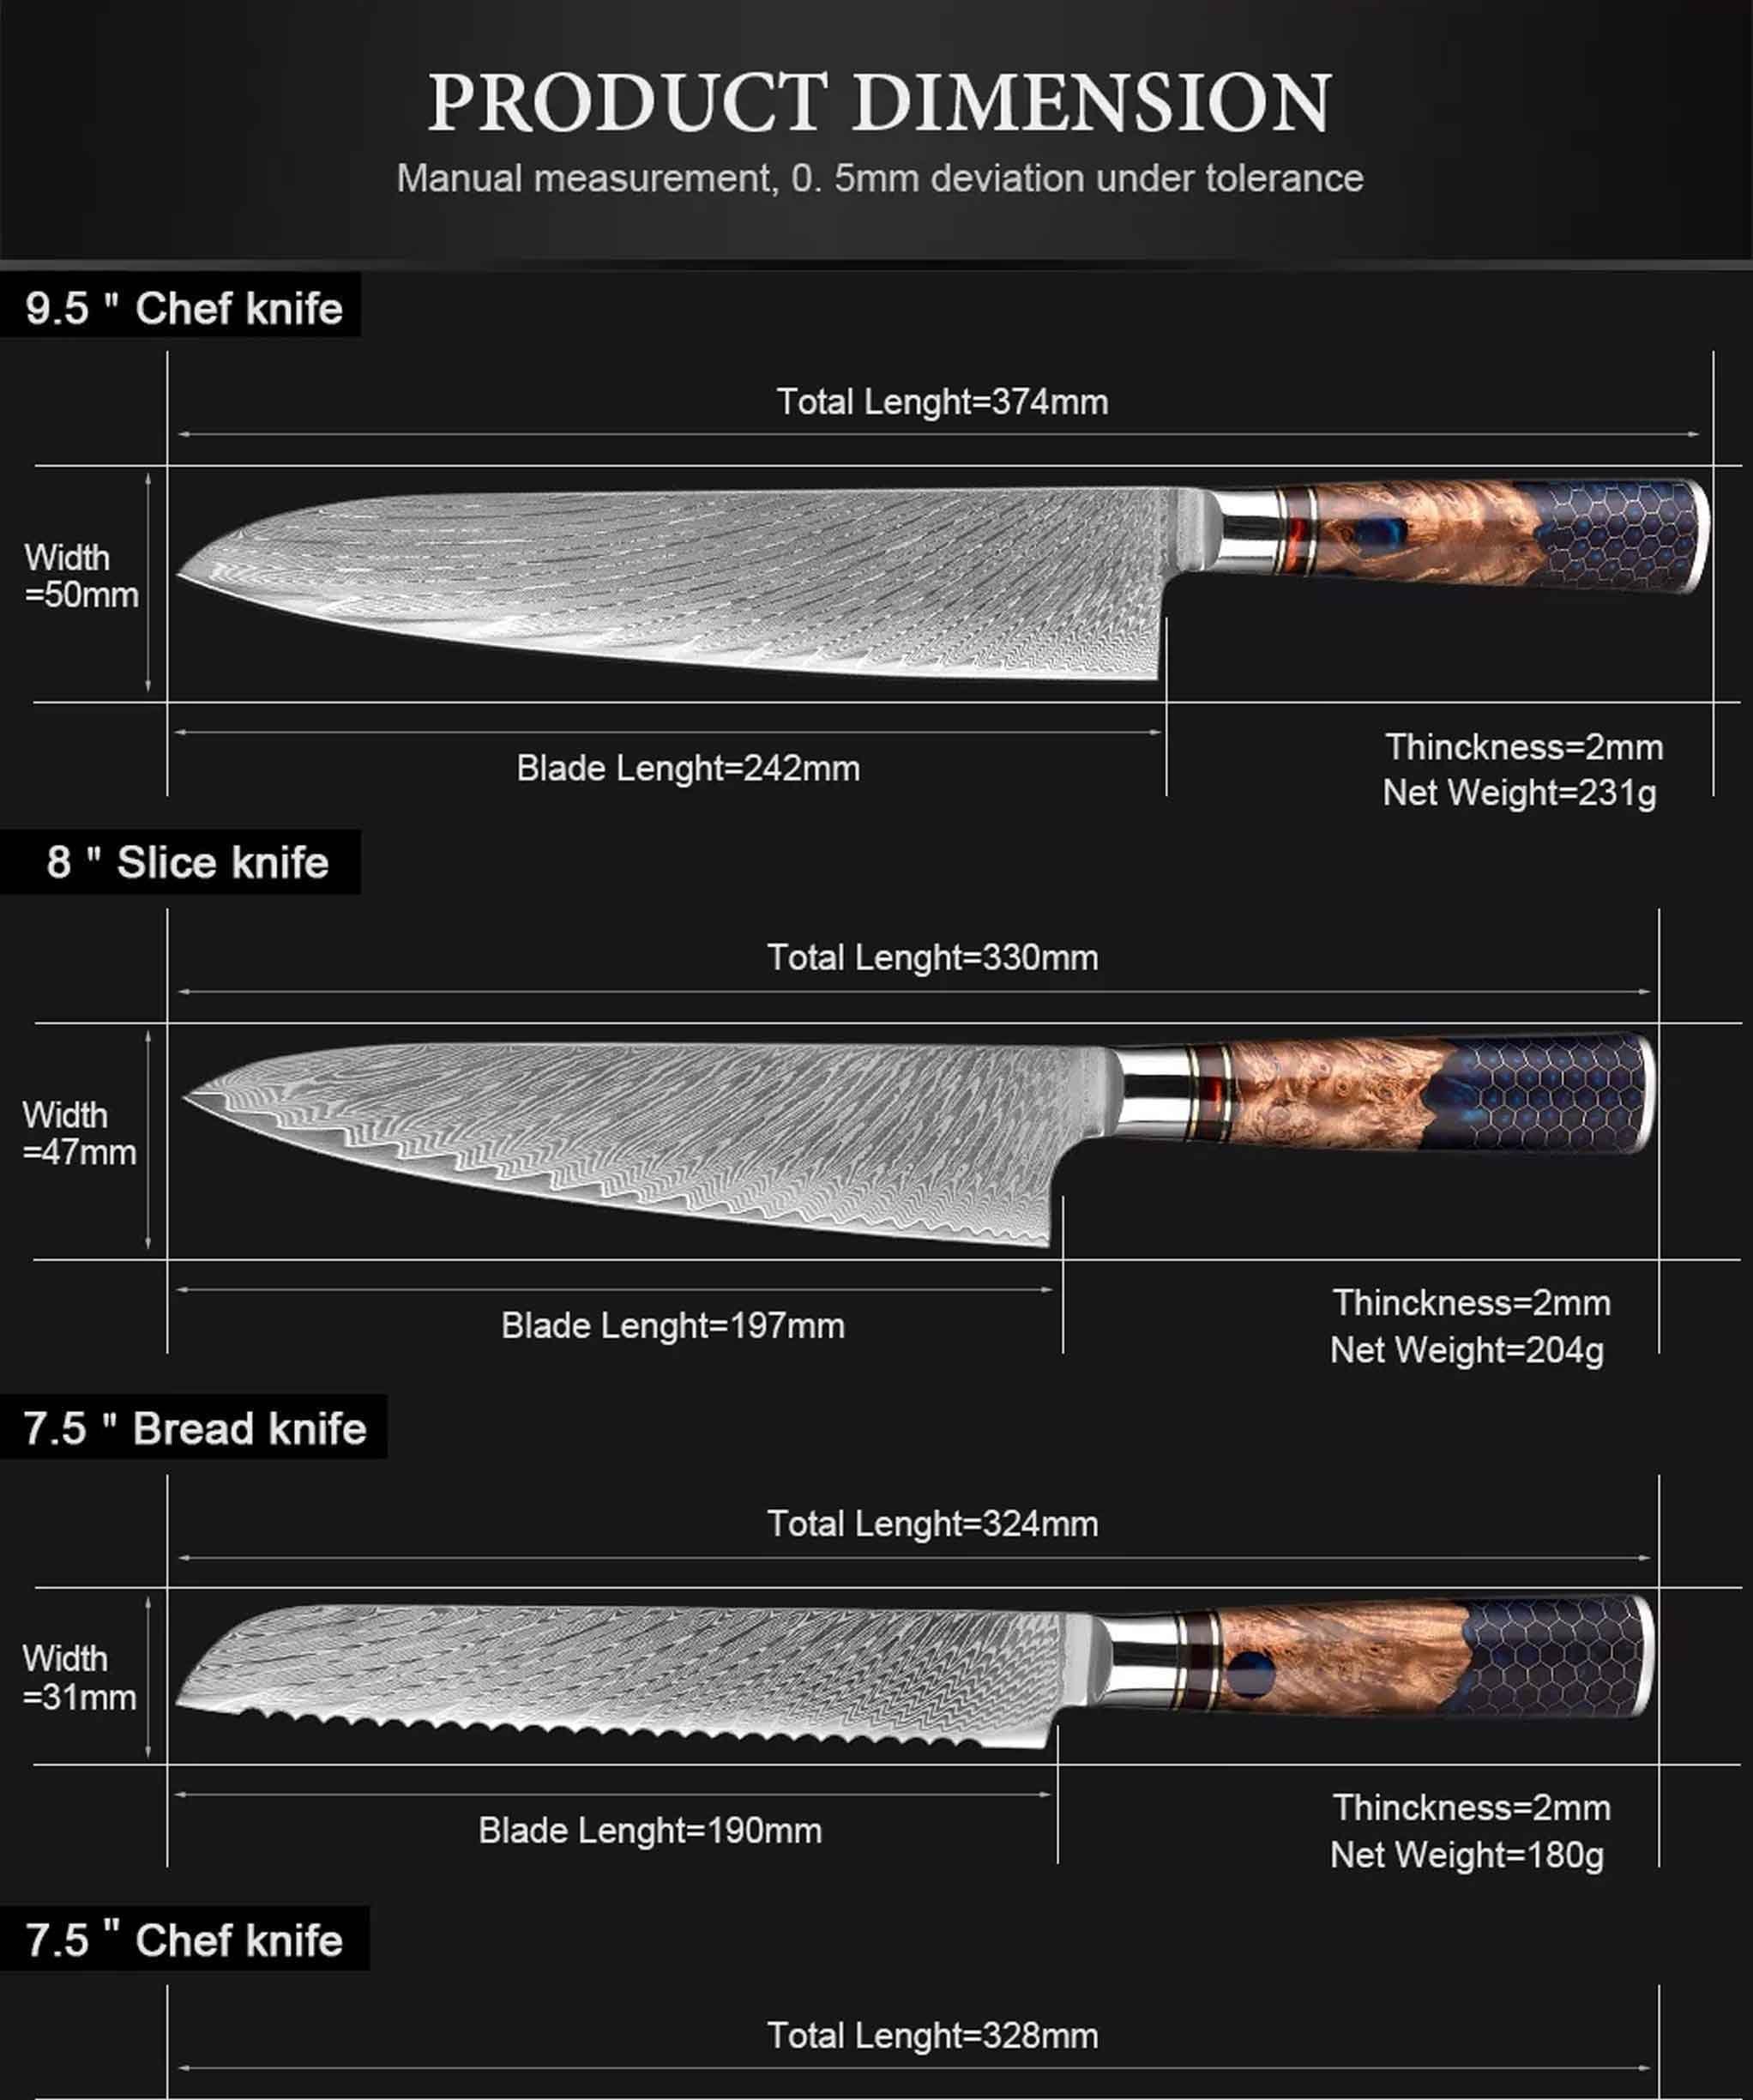 Muxel 7-tlg Damast Jedes Extrem extrem ist Set Kochmesser, scharfe Küchenmesser Unikat schöne ein Allzweckmesser Messer